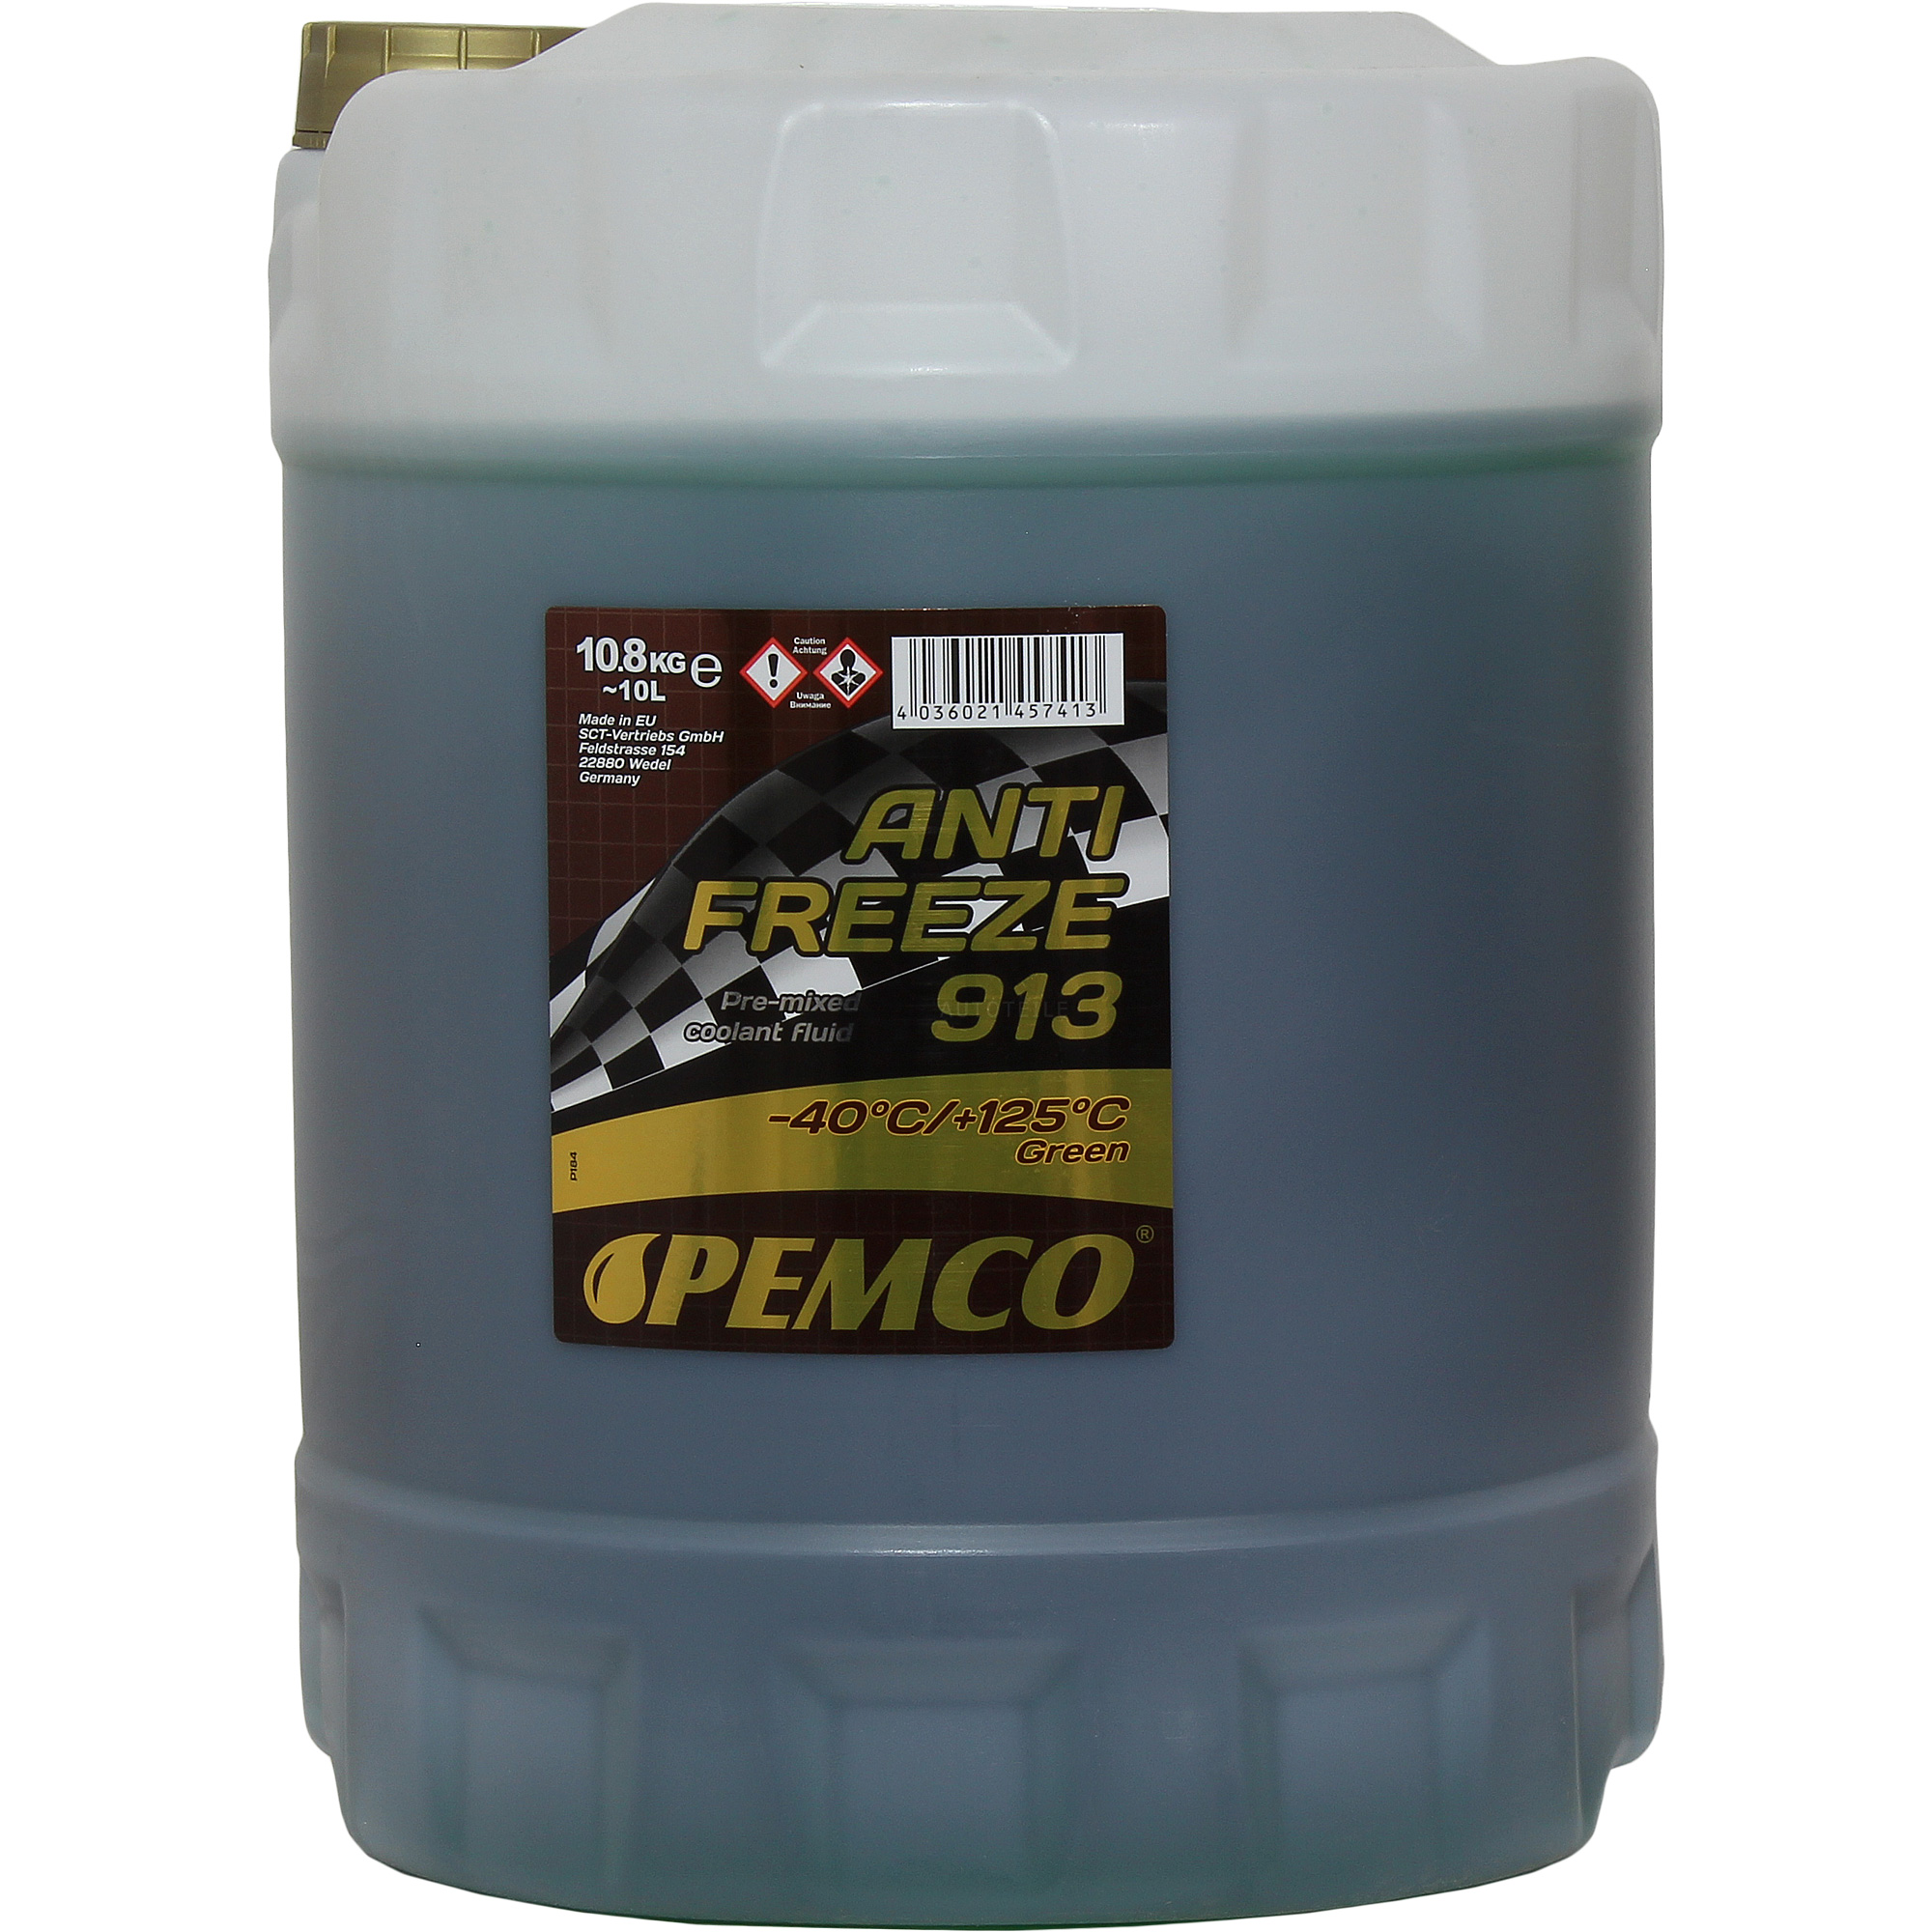  Pemco 1 x10 Liter Kühlerfrostschutz Antifreeze 913 grün green PM0913-10